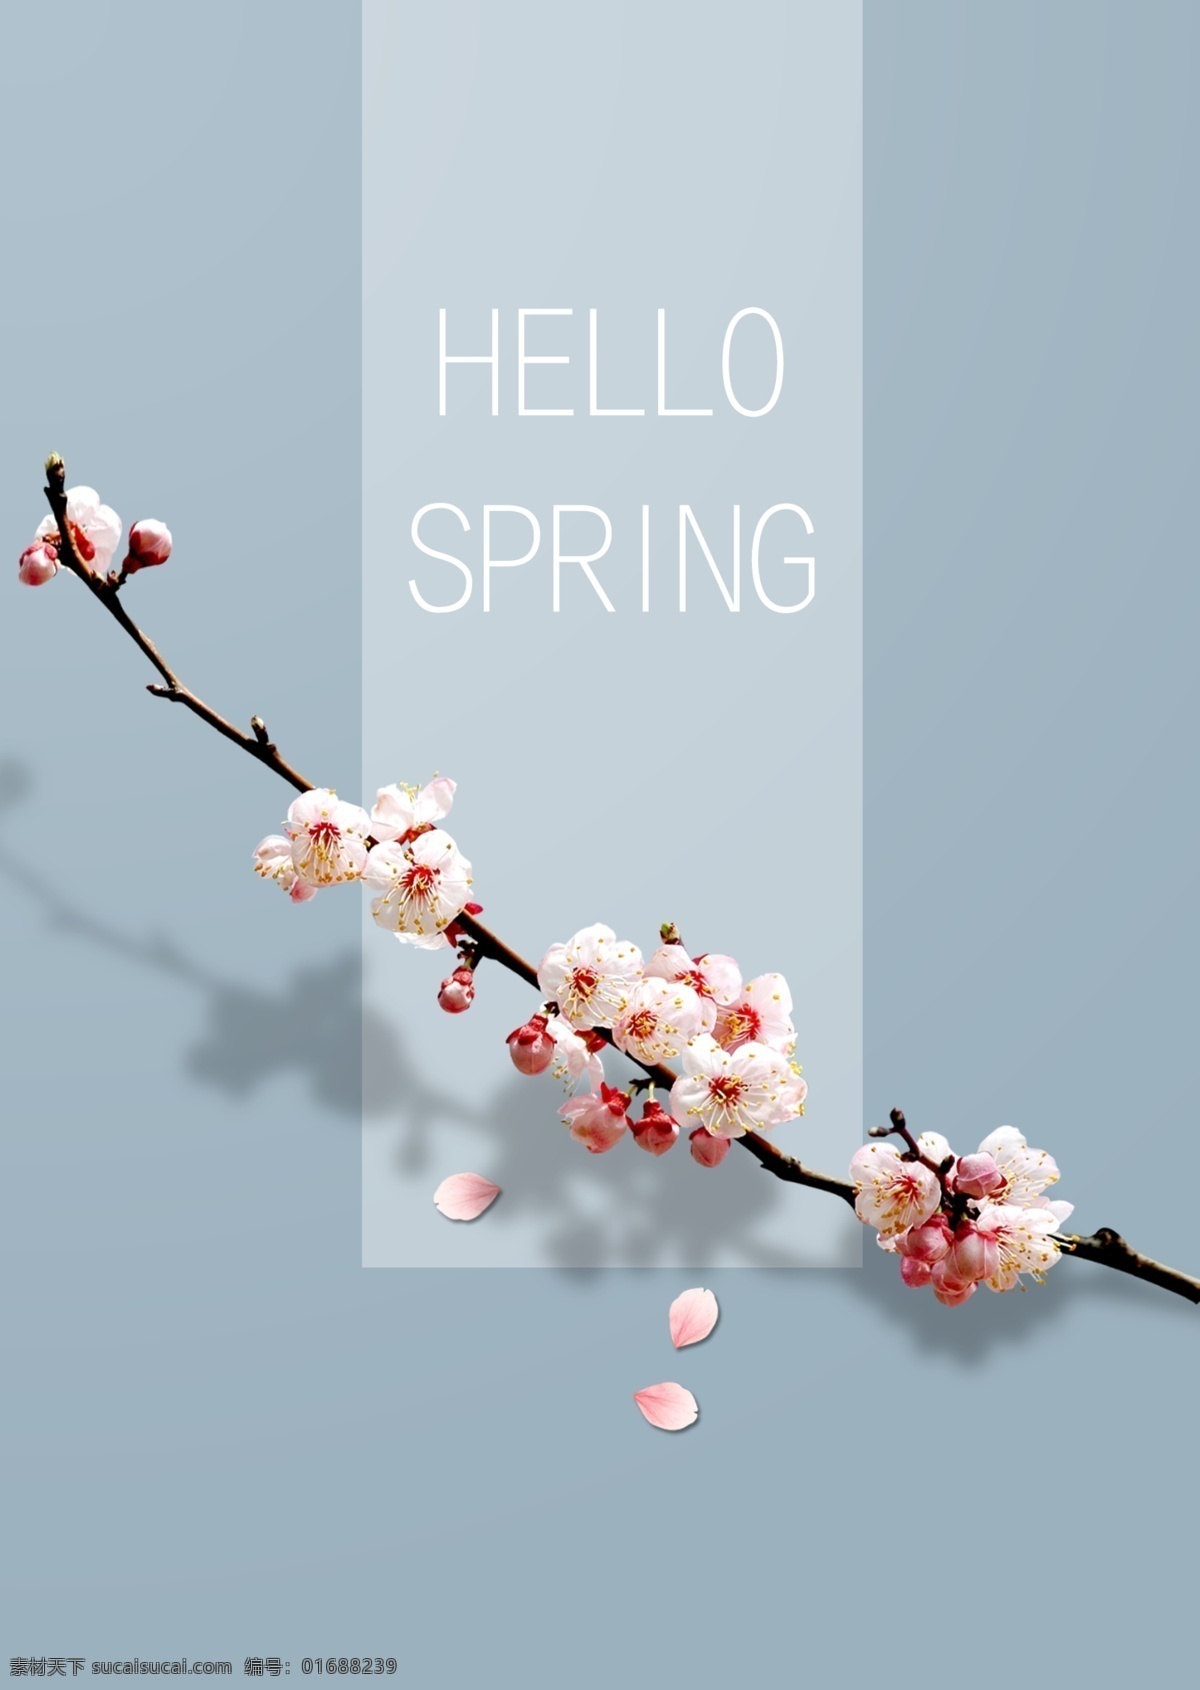 蓝色 清新 风 桃花 春季 促销 海报 春天 鲜花 花瓣 英文 打折 季节